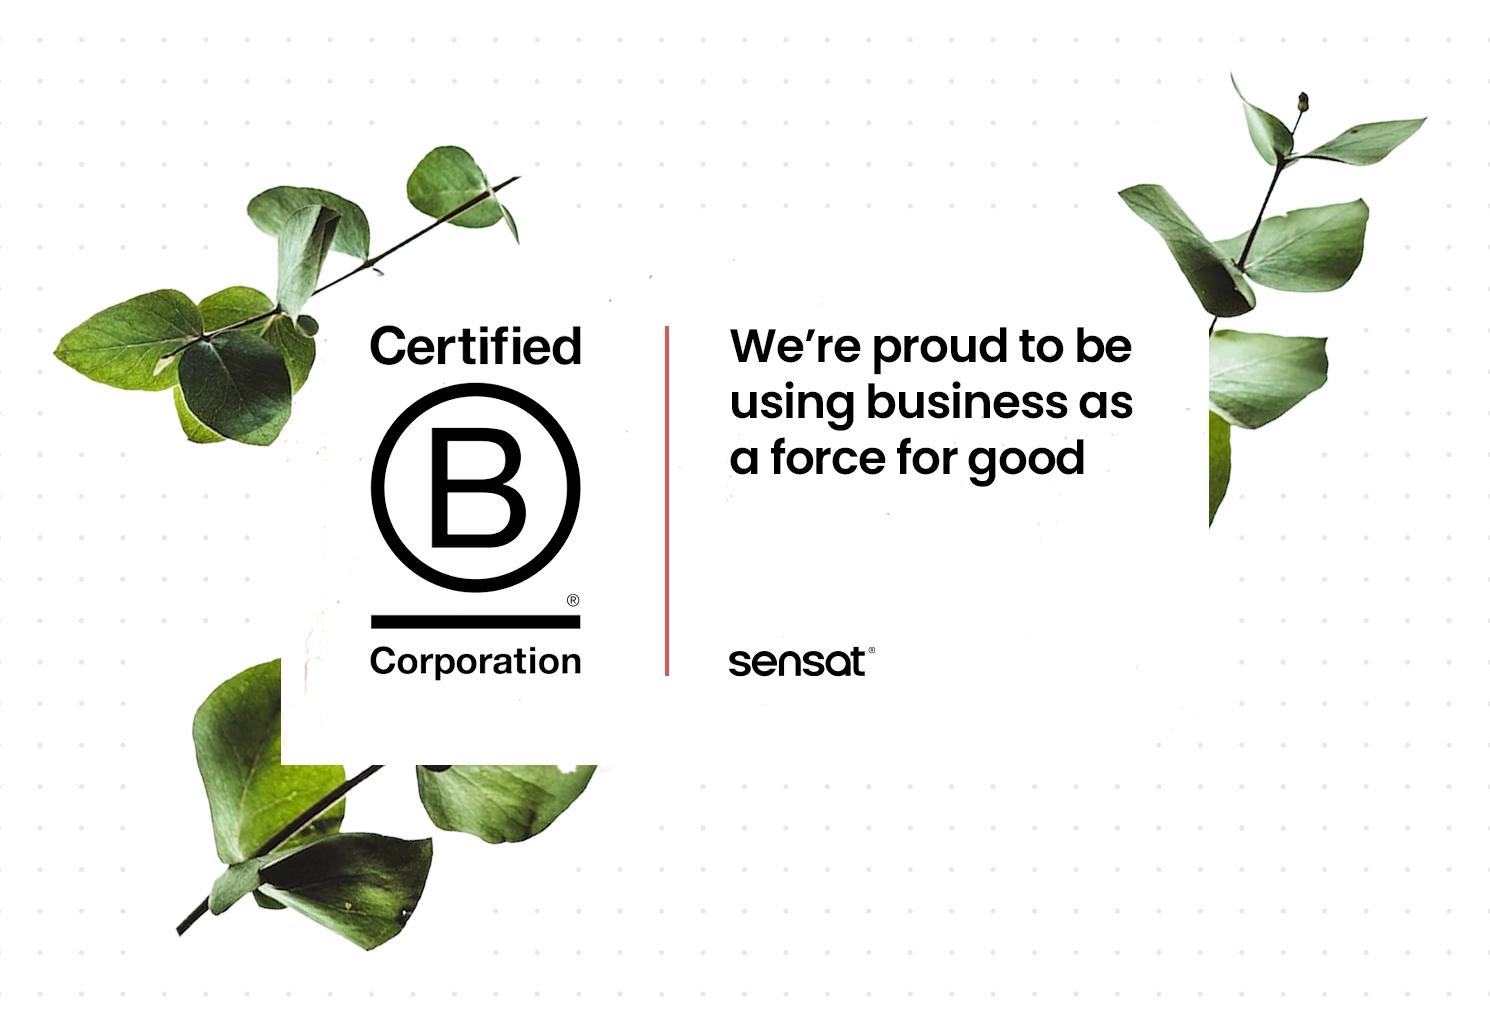 Sensat certifies as a B Corporation